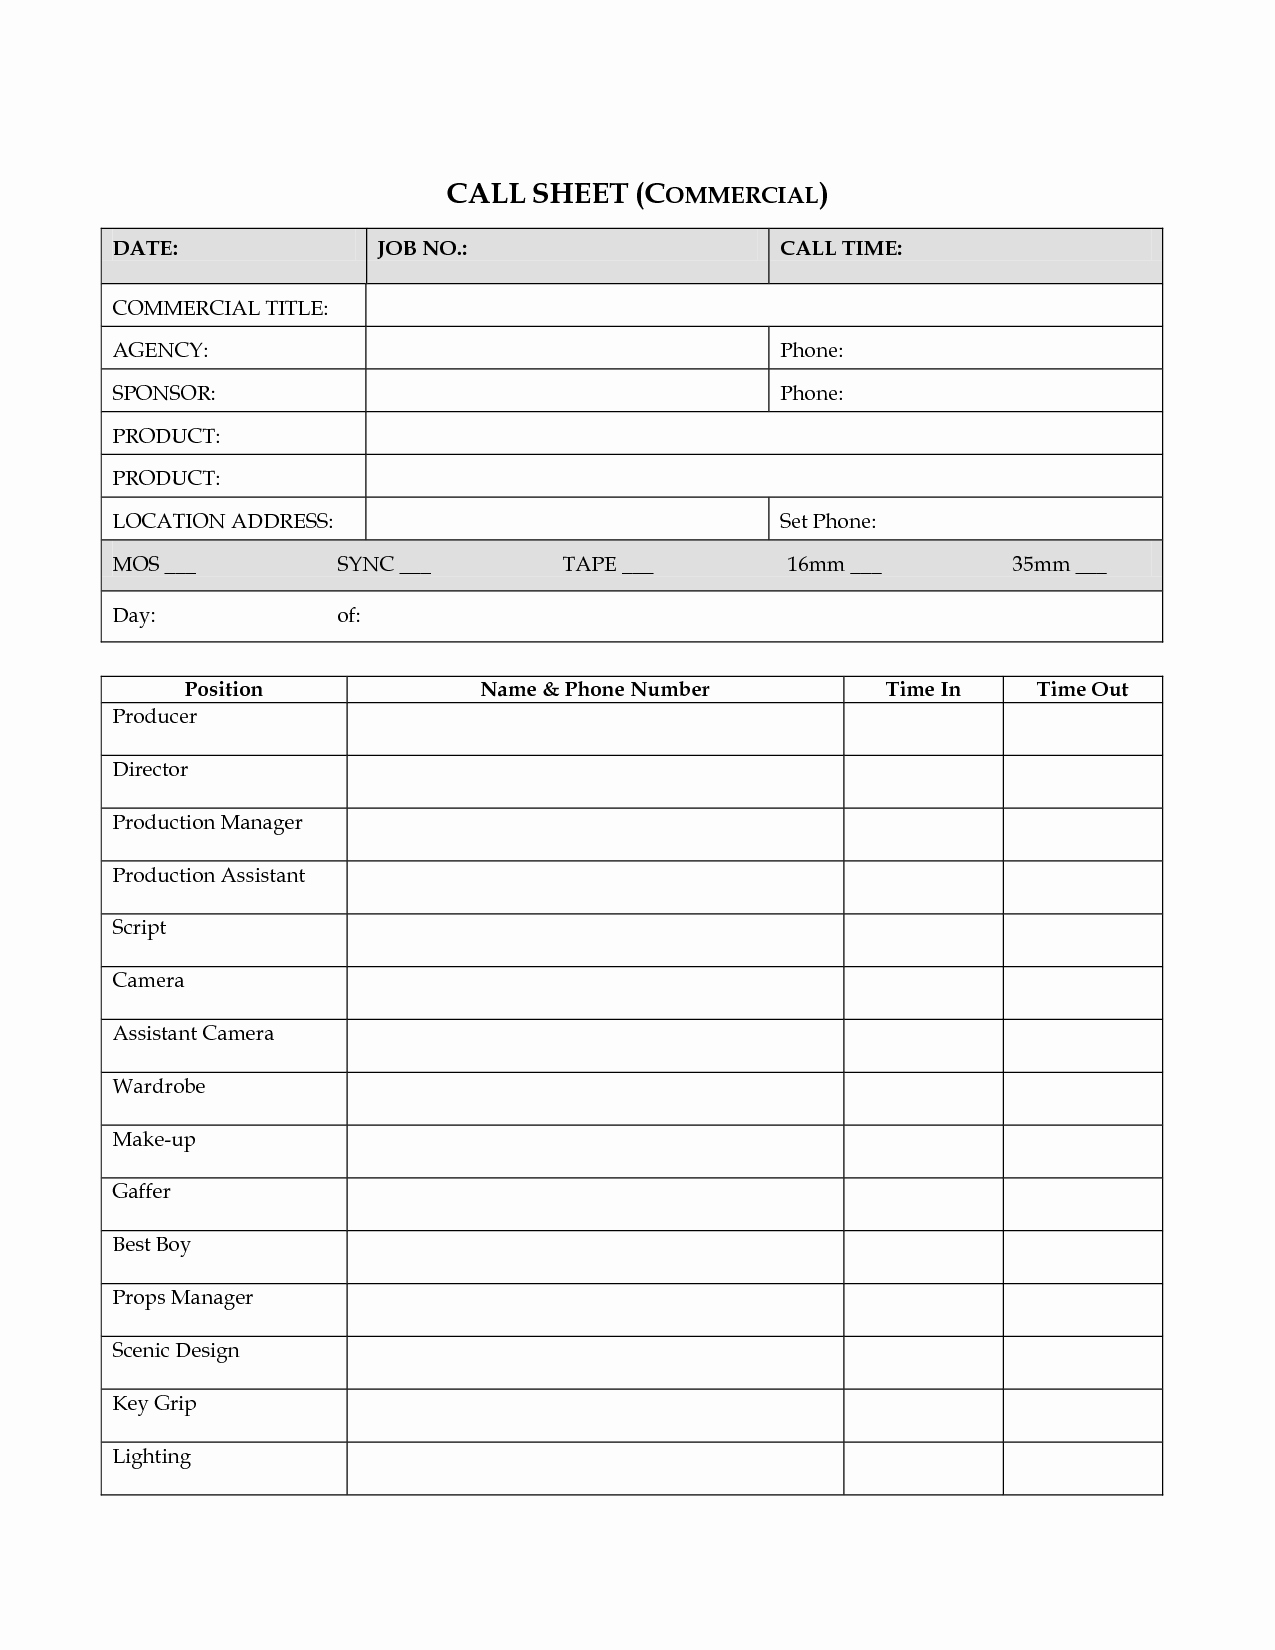 Call Sheet Template Excel Best Of Call Sheet Template Excel Portablegasgrillweber